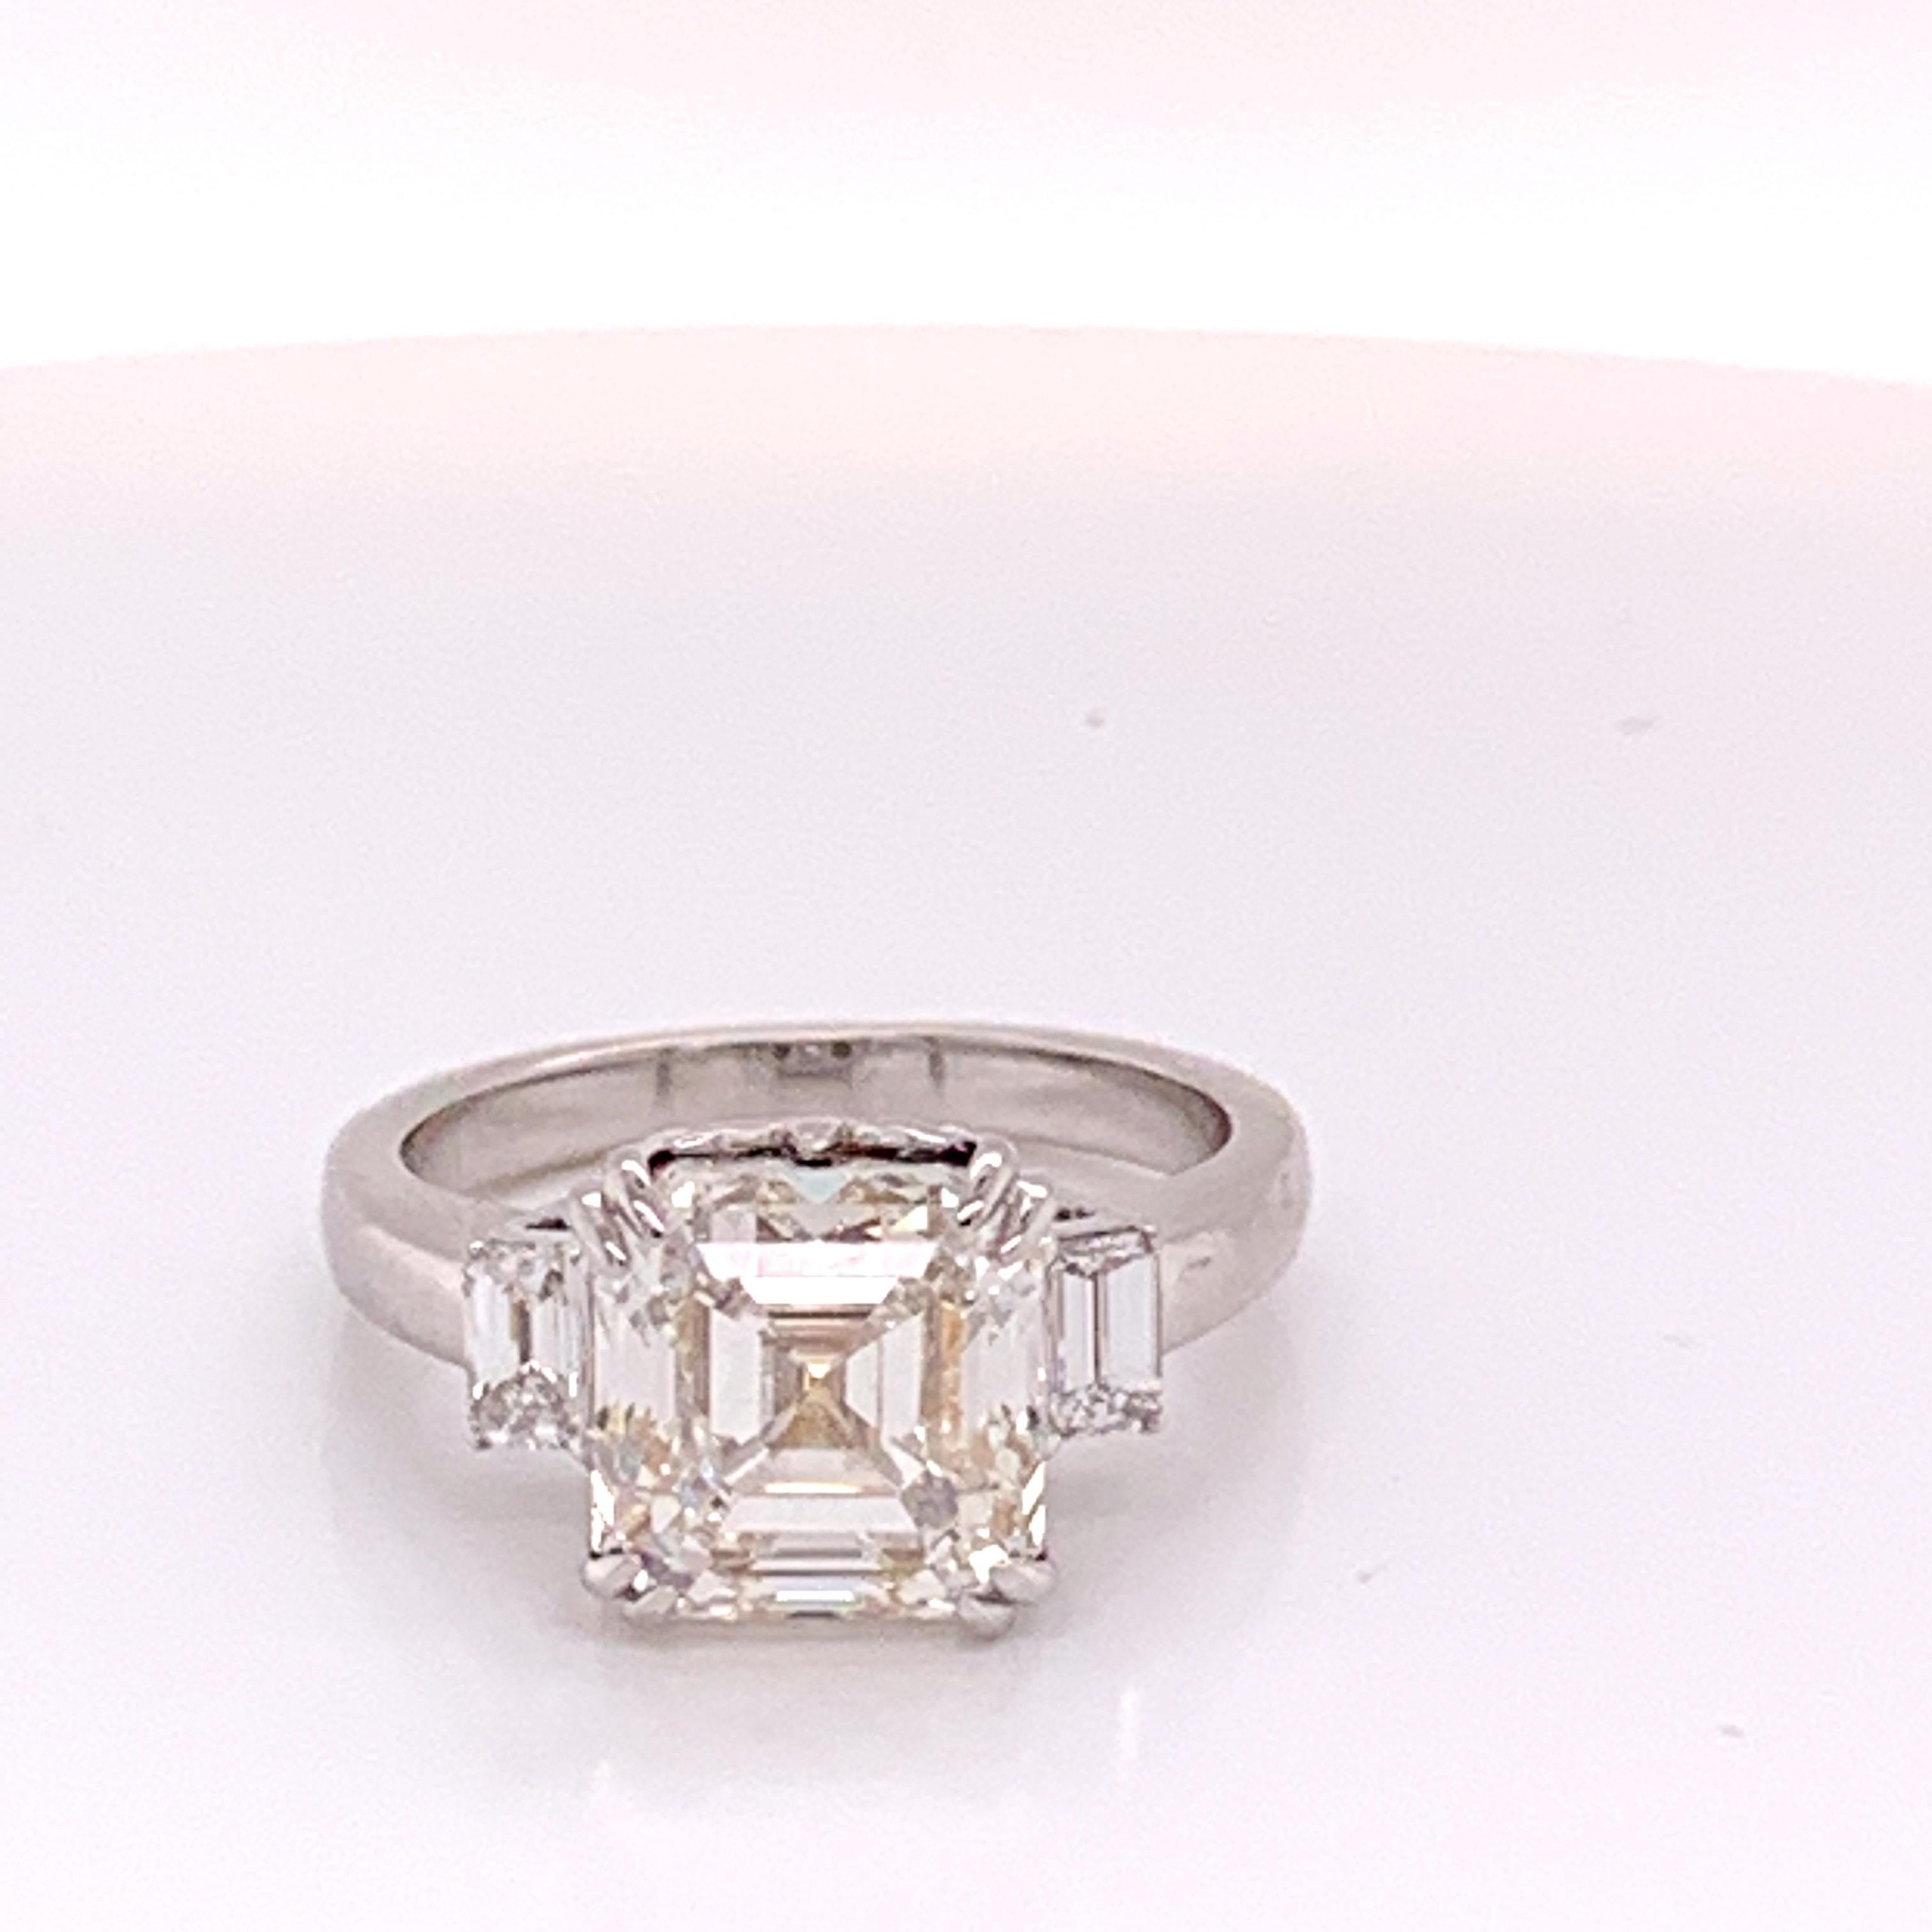 Asscher Cut GIA Certified 4.69 Carat Diamond Ring